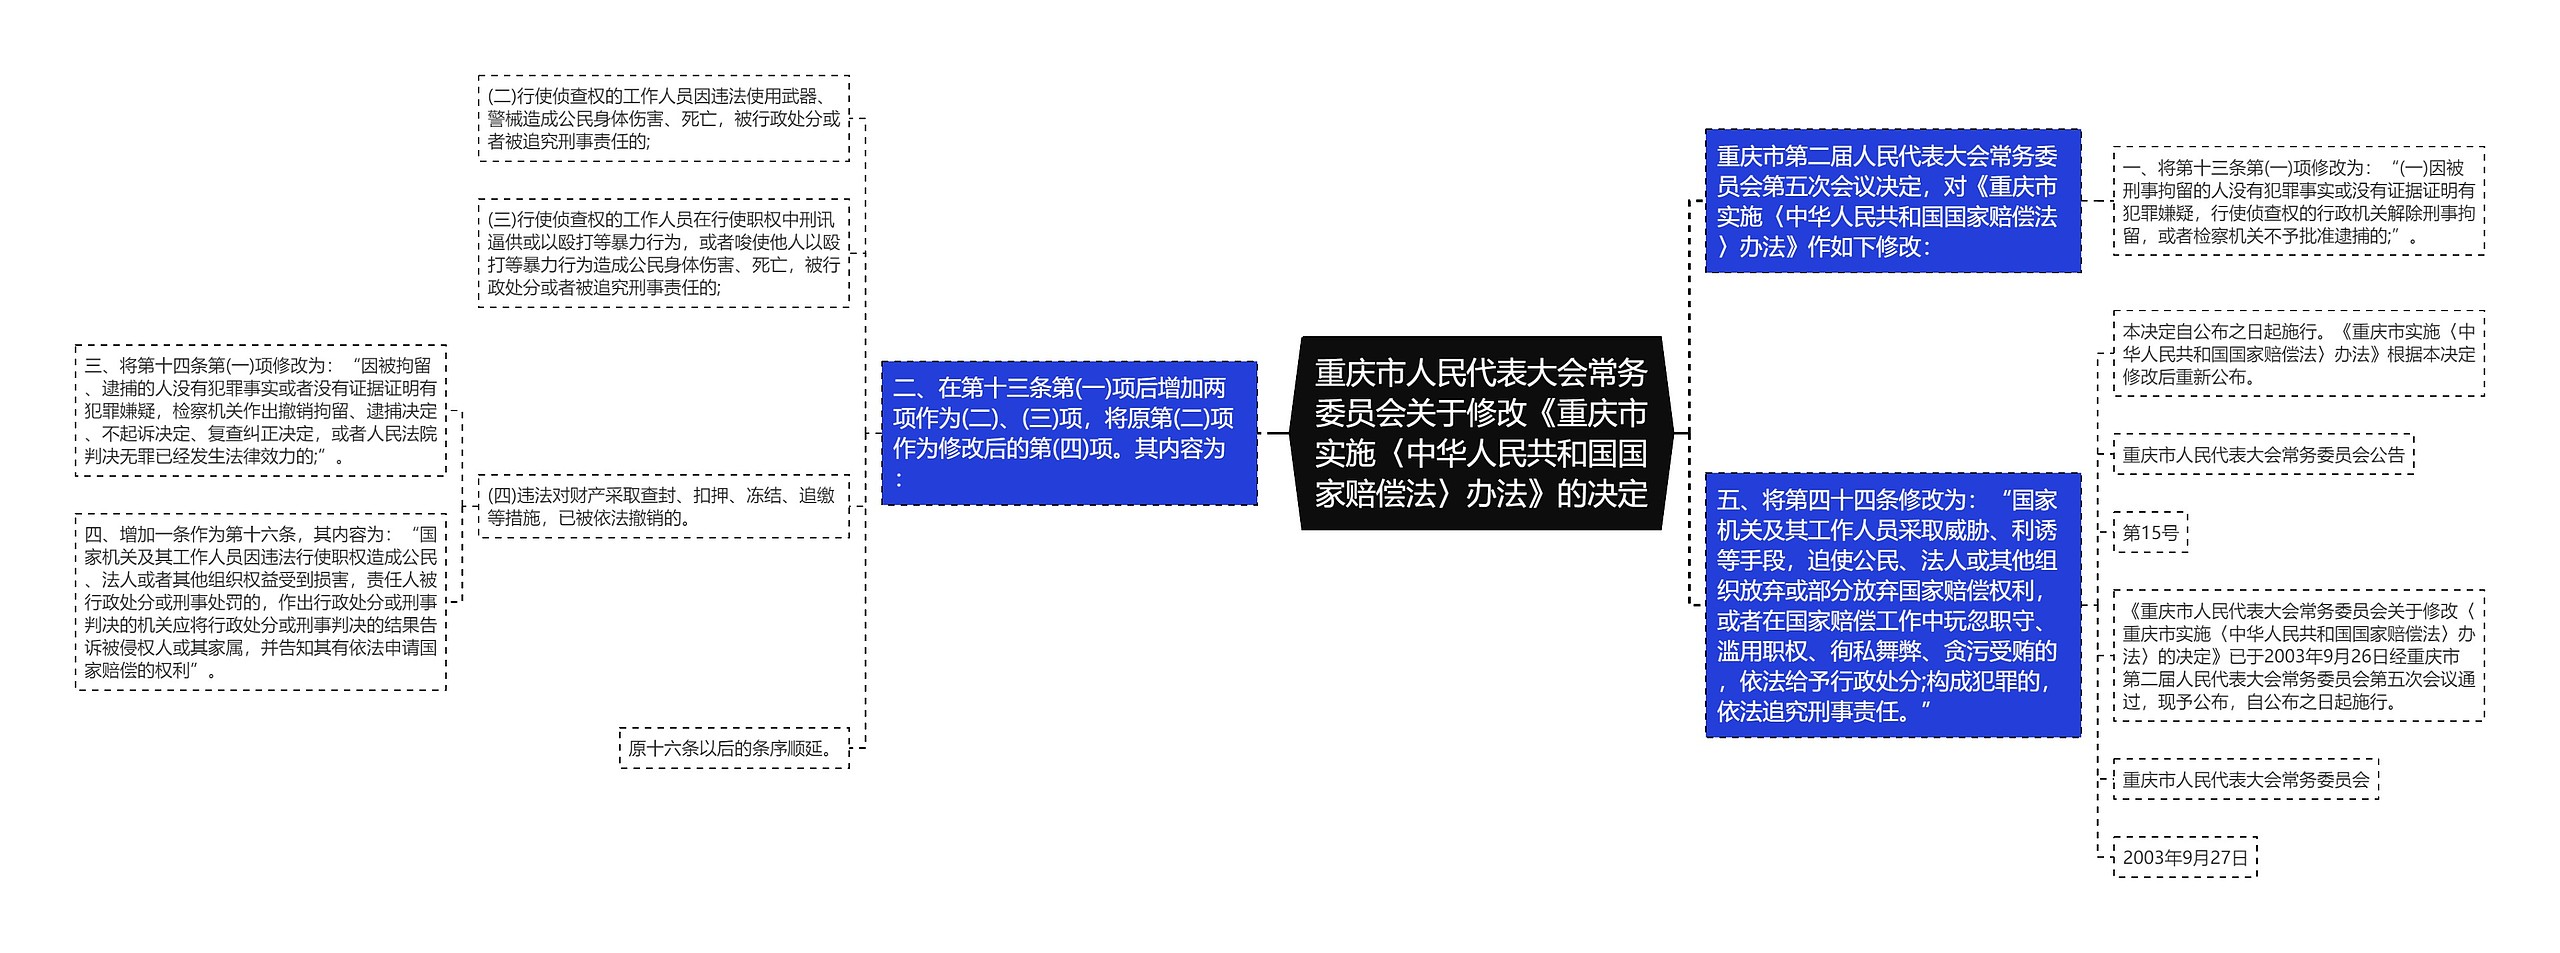 重庆市人民代表大会常务委员会关于修改《重庆市实施〈中华人民共和国国家赔偿法〉办法》的决定